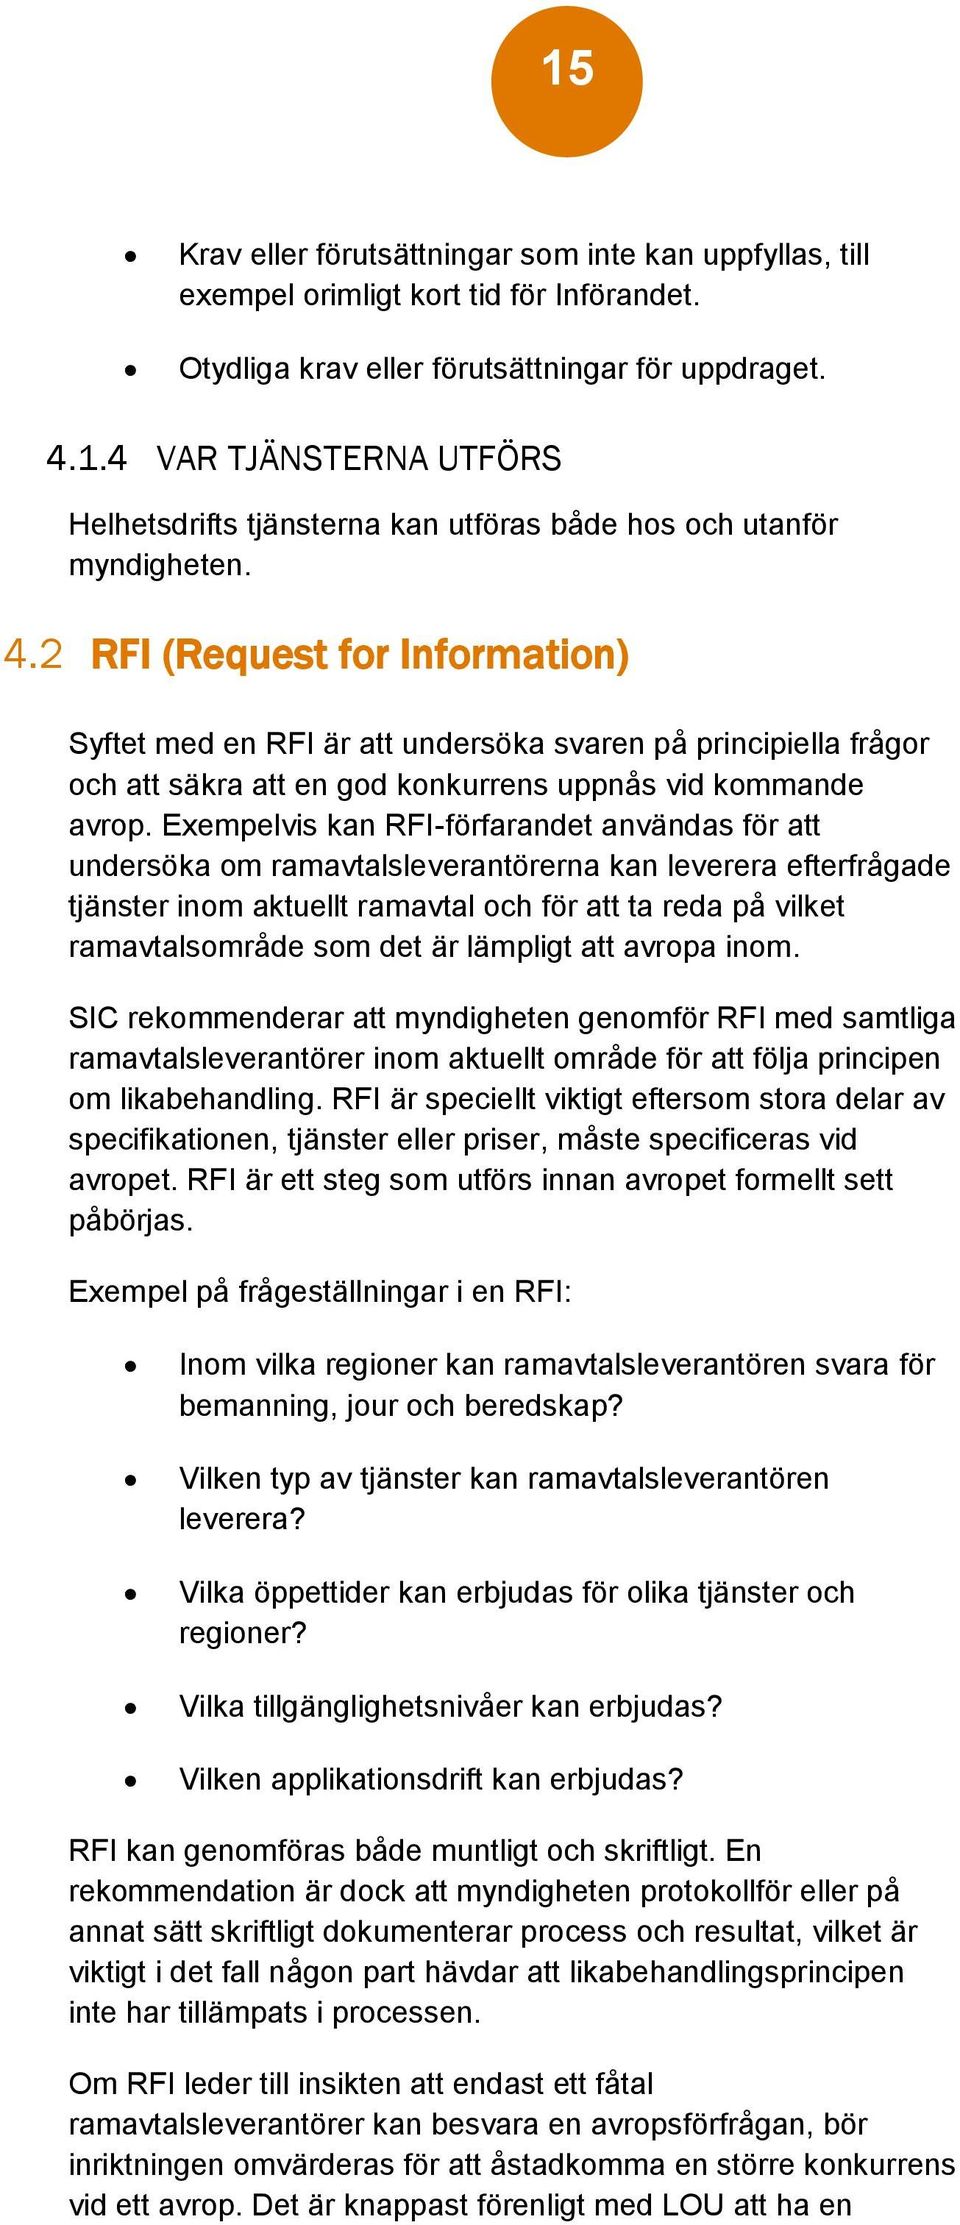 Exempelvis kan RFI-förfarandet användas för att undersöka om ramavtalsleverantörerna kan leverera efterfrågade tjänster inom aktuellt ramavtal och för att ta reda på vilket ramavtalsområde som det är